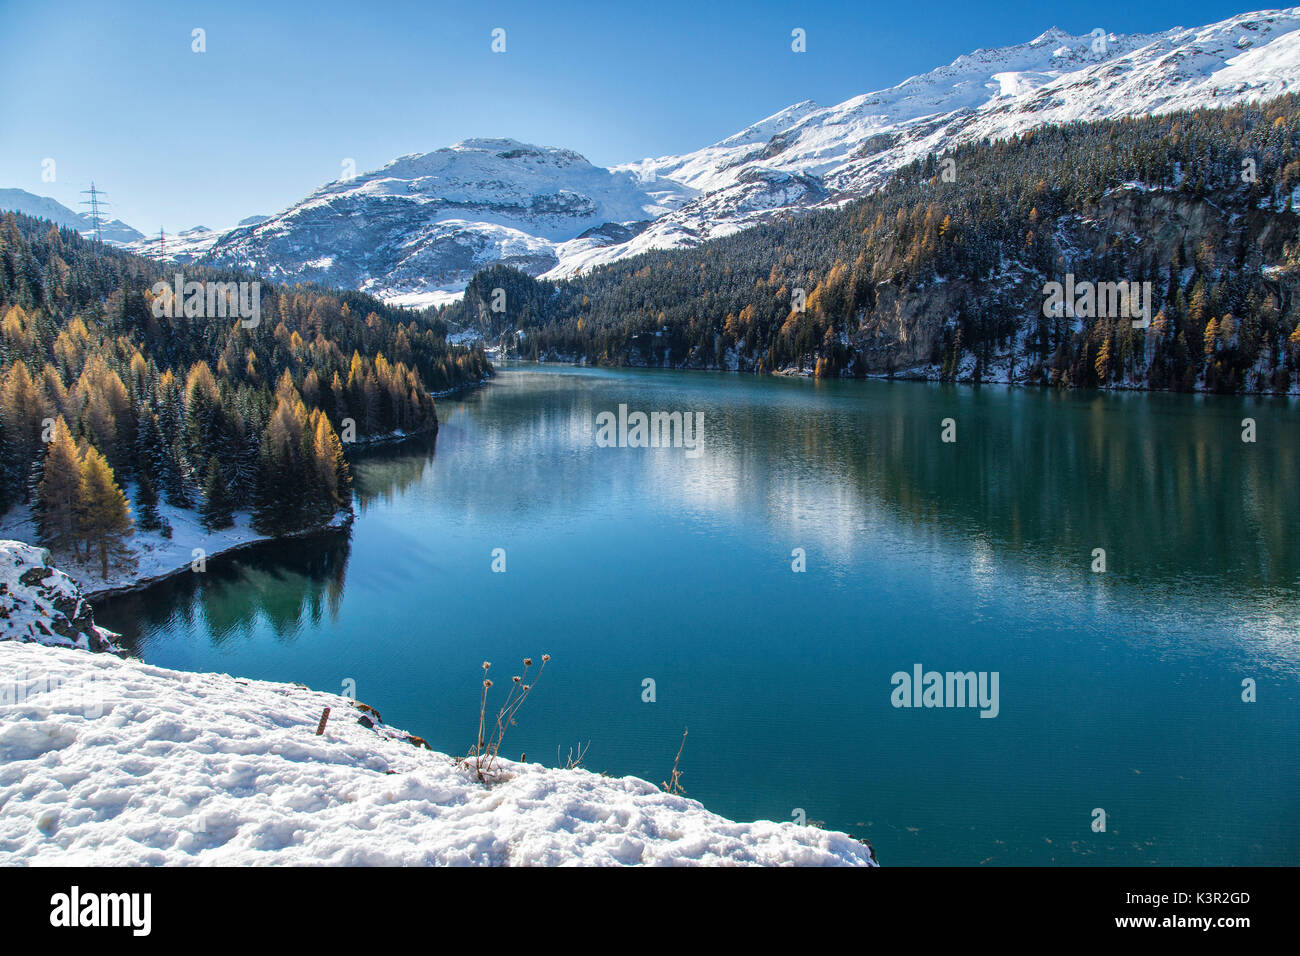 Colorati boschi innevati si riflette nelle limpide acque di Lej da Marmorera Val Sursette Cantone dei Grigioni Svizzera Europa Foto Stock